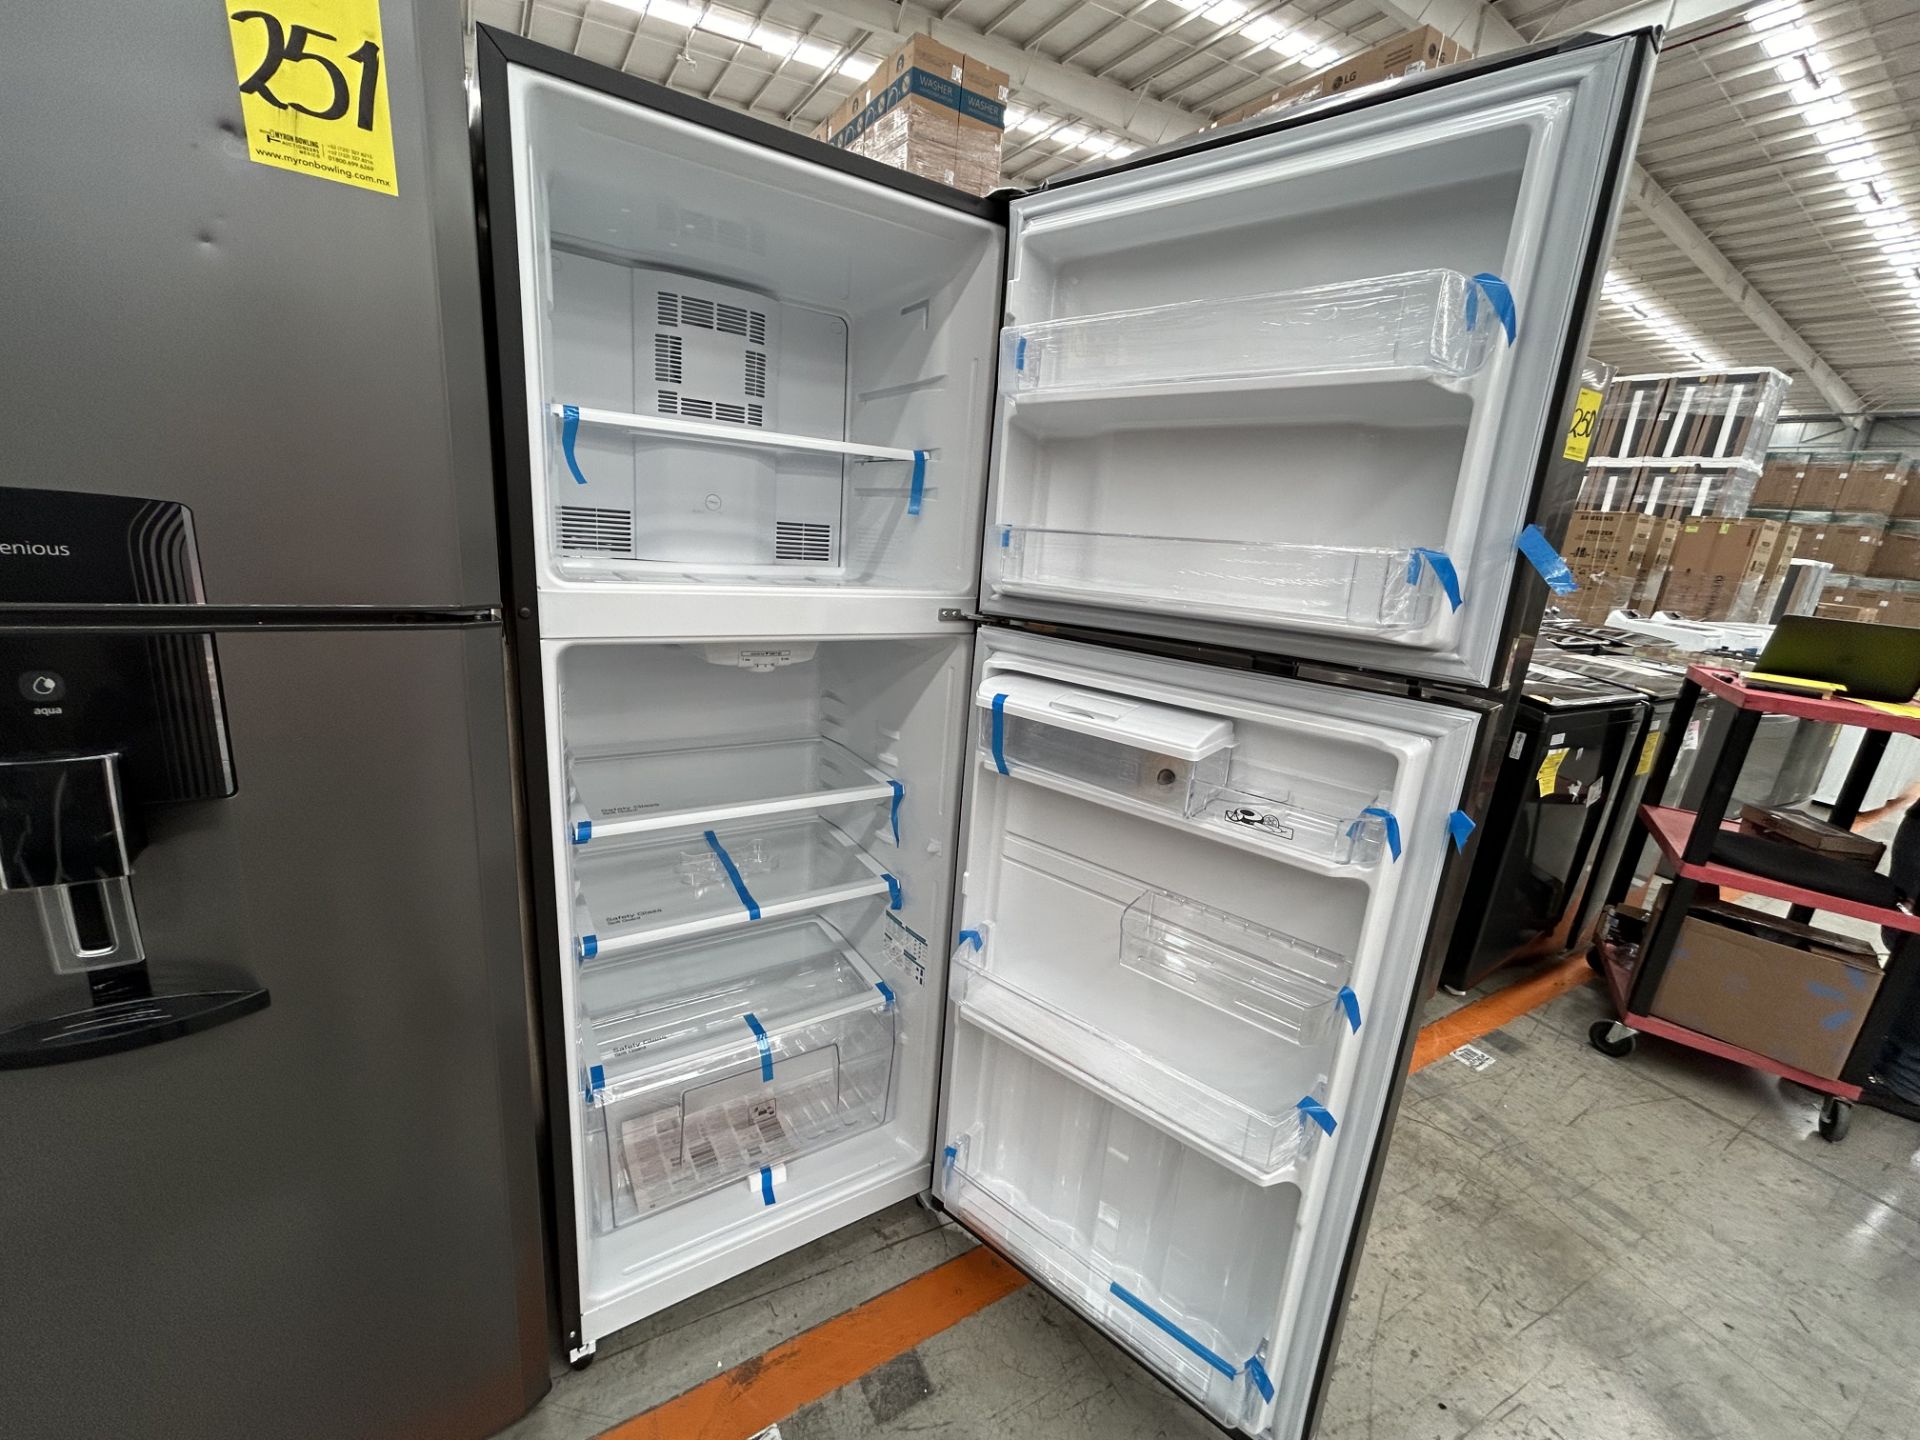 Lote de 2 refrigeradores contiene: 1 refrigerador con dispensador de agua Marca MABE, Modelo RME360 - Image 4 of 6